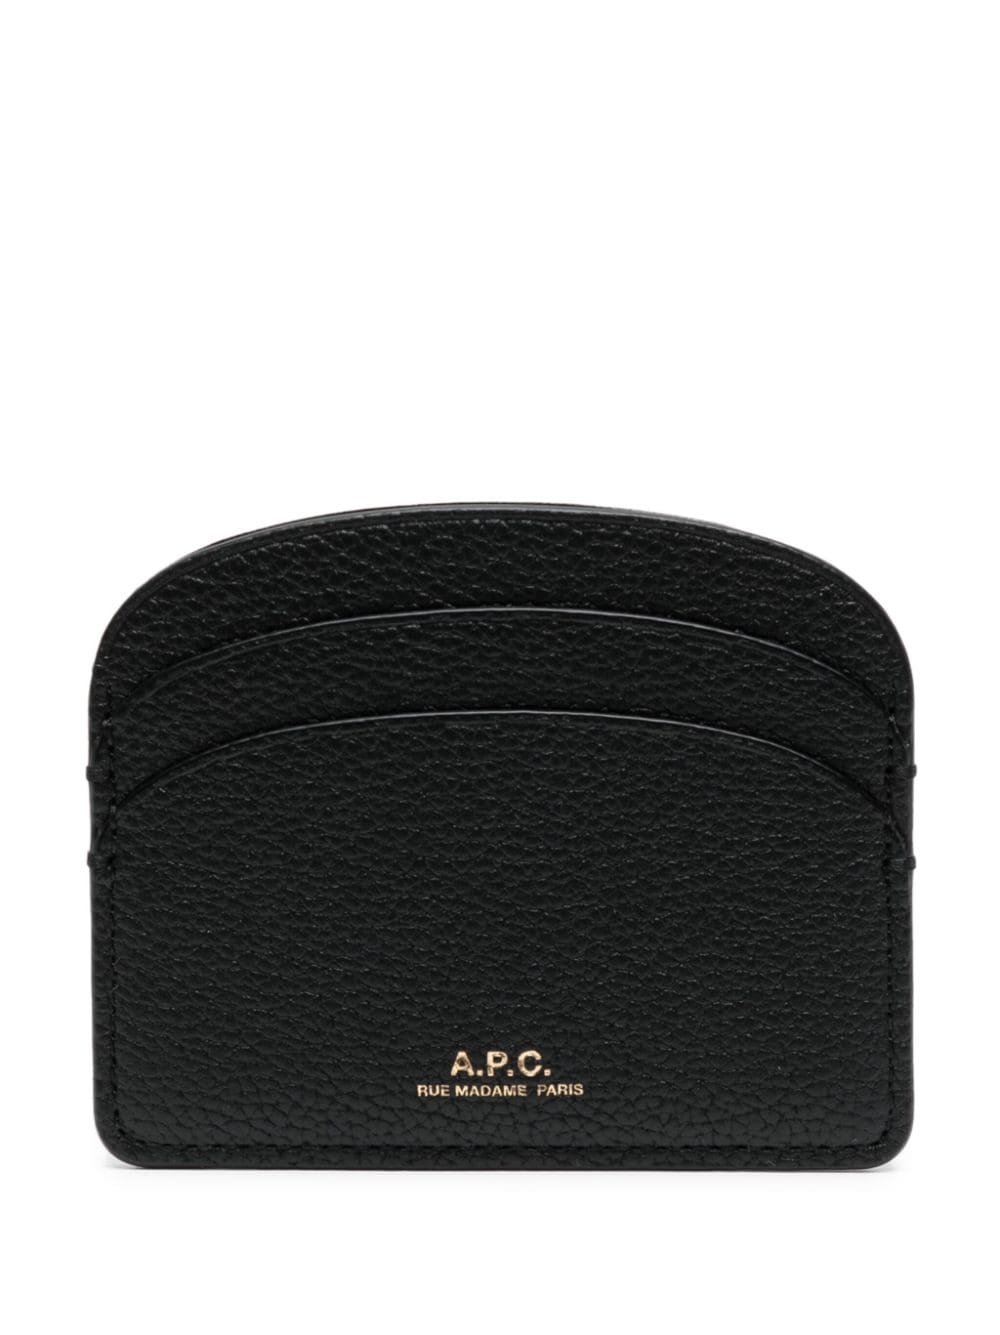 Apc Demi-lune Leather Cardholder In Black